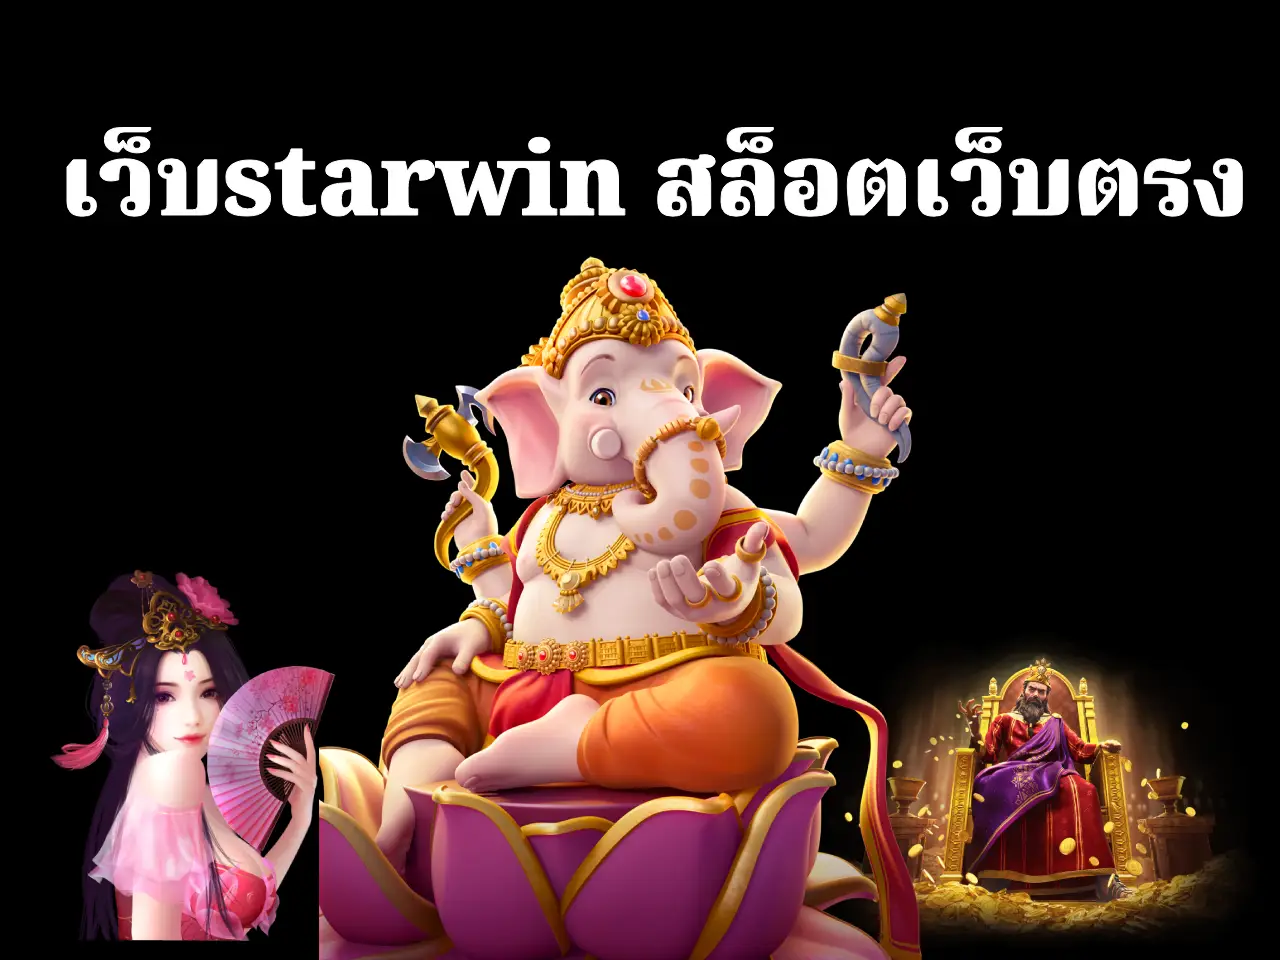 เว็บstarwin สล็อตเว็บตรง 1 เดียวในไทย ที่ดีที่สุด ปก